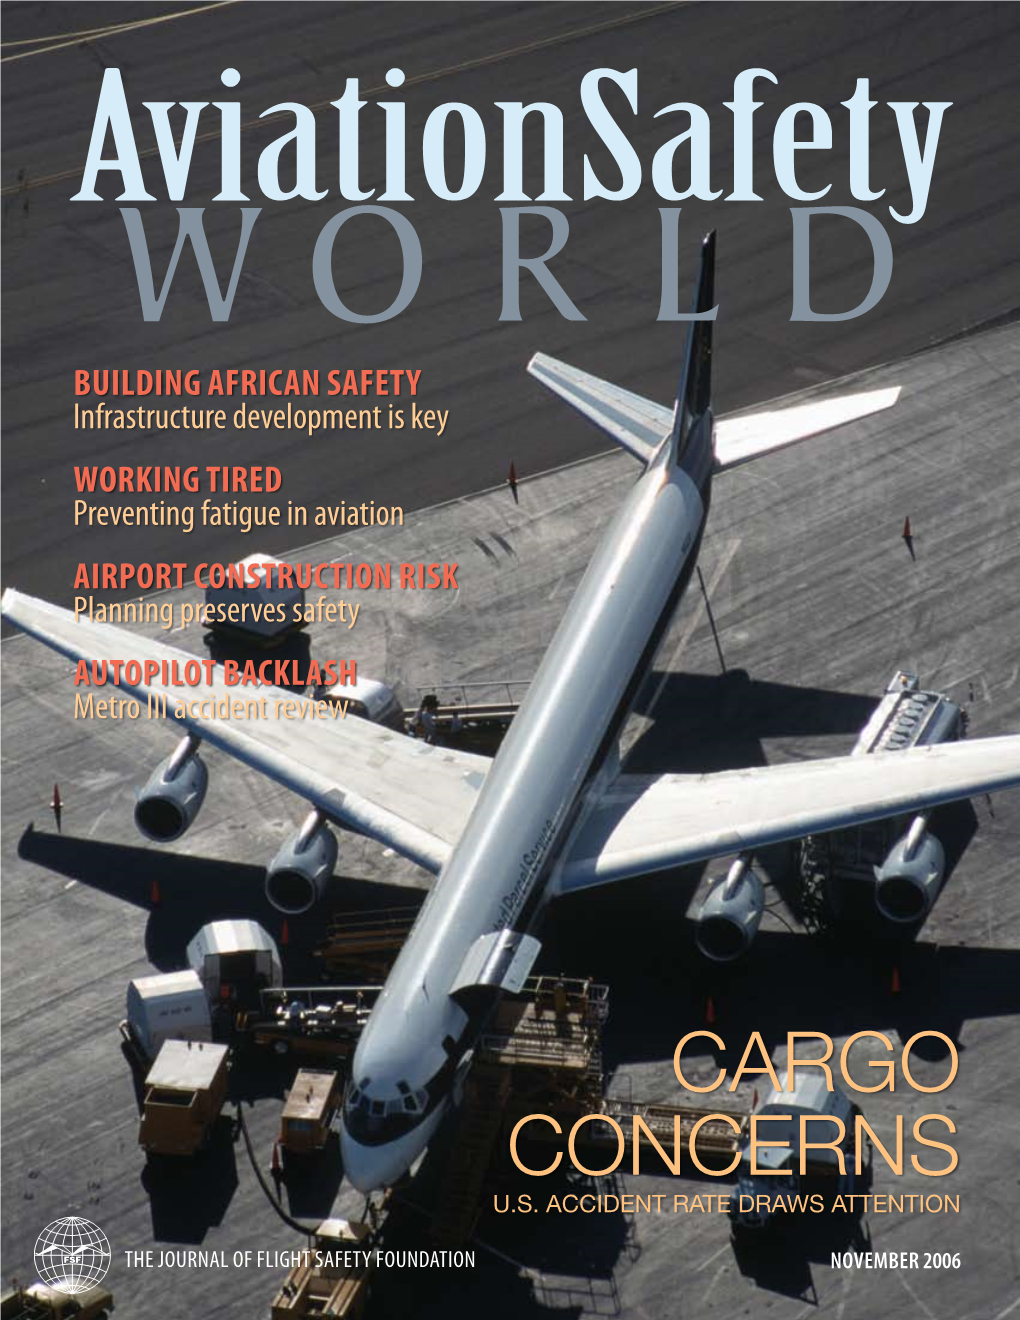 Aviation Safety World, November 2006